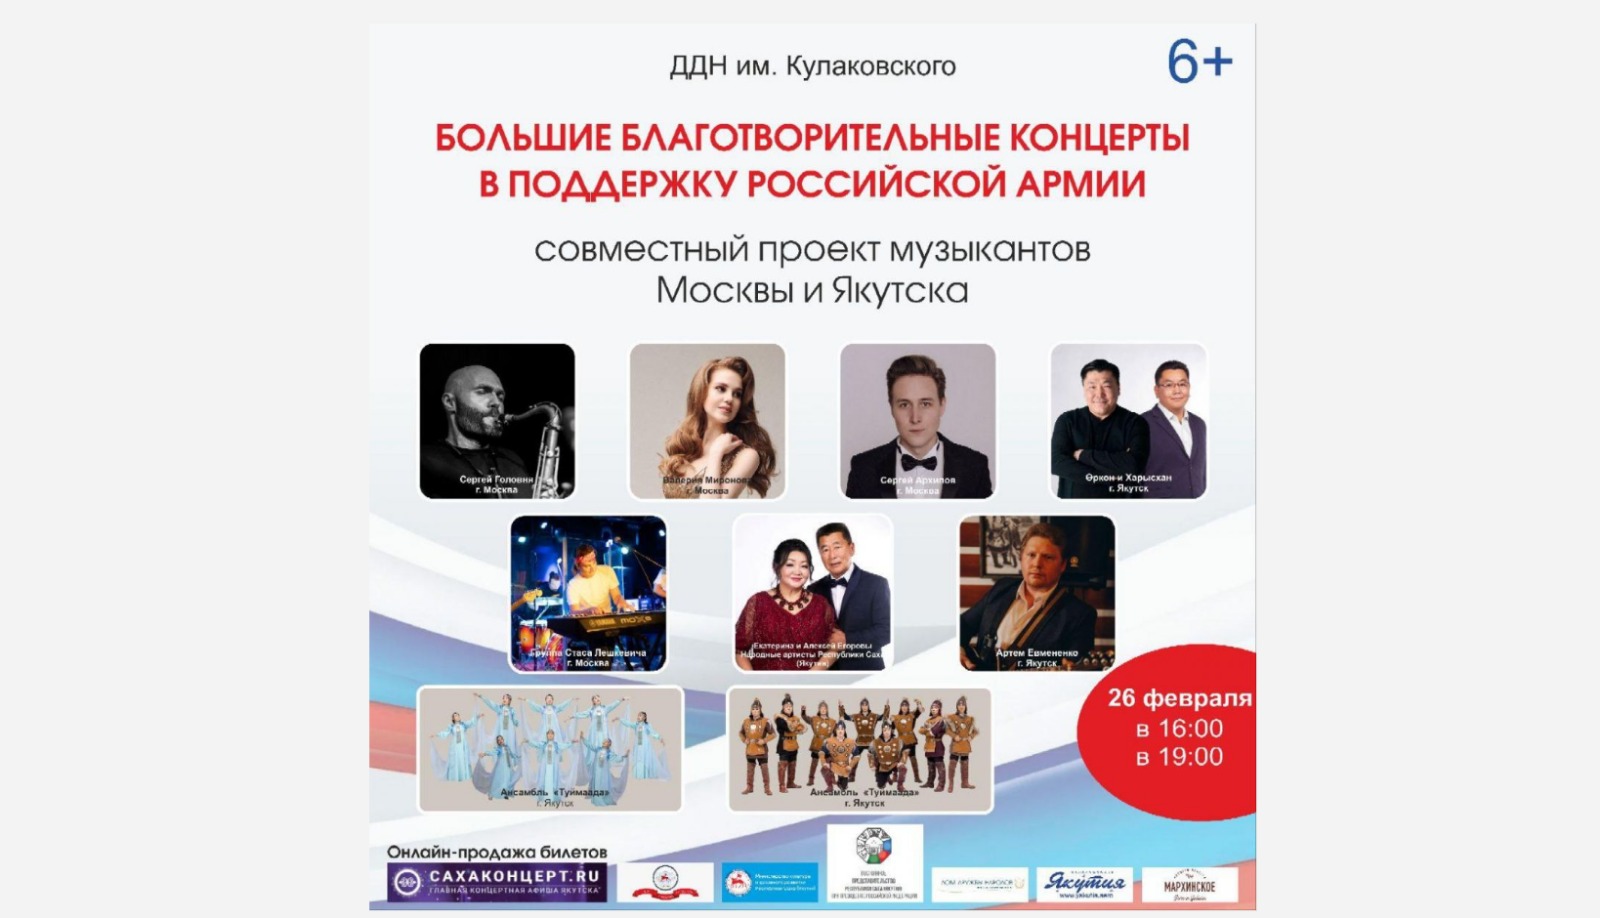 Участники "Голоса", известный джазмен и якутские артисты дадут благотворительные концерты в Якутске